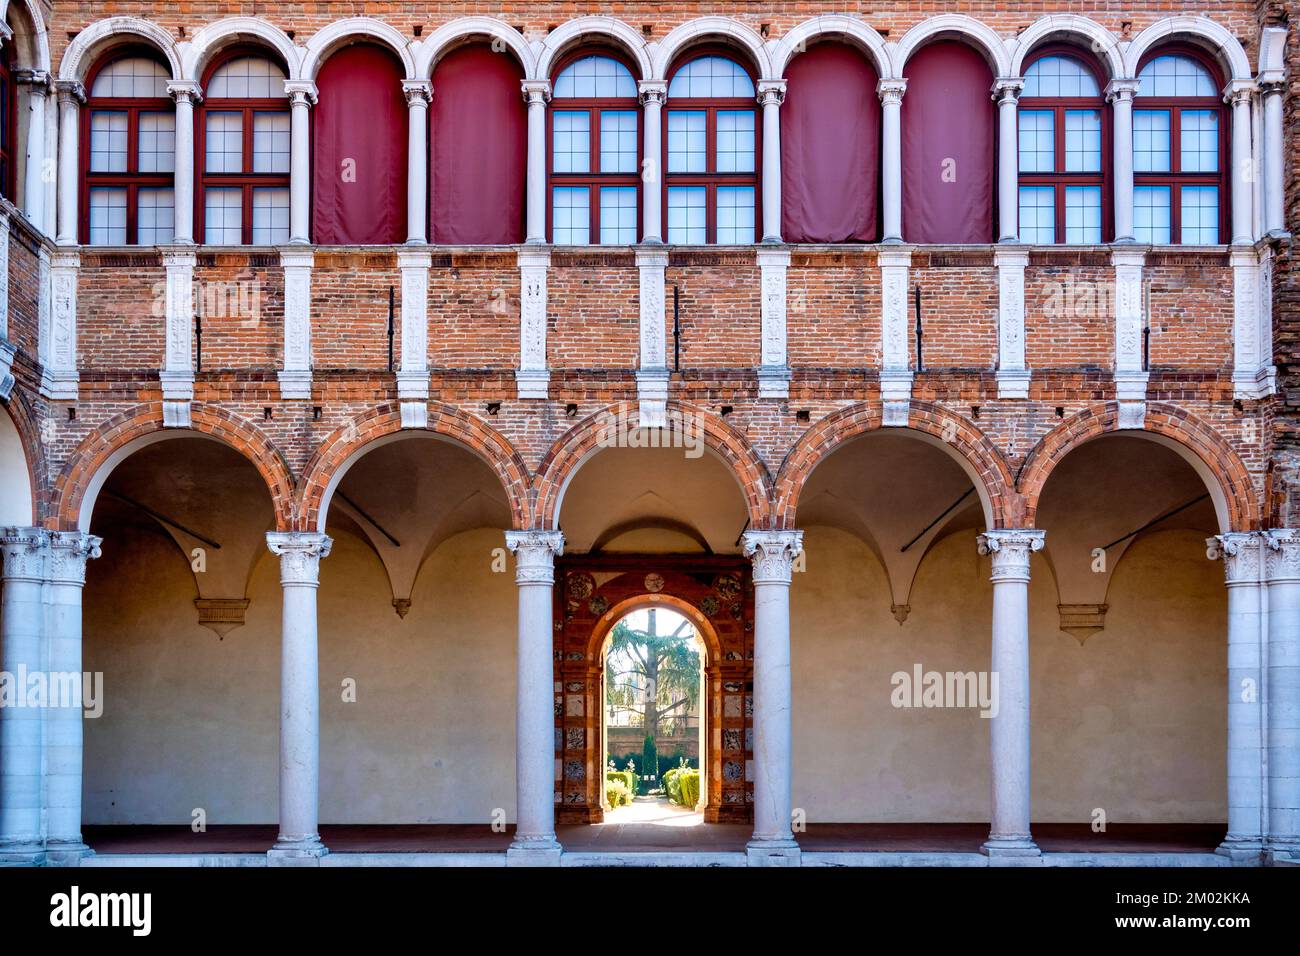 Courtyard of the Palazzo Costabili, Ferrara Italy Stock Photo